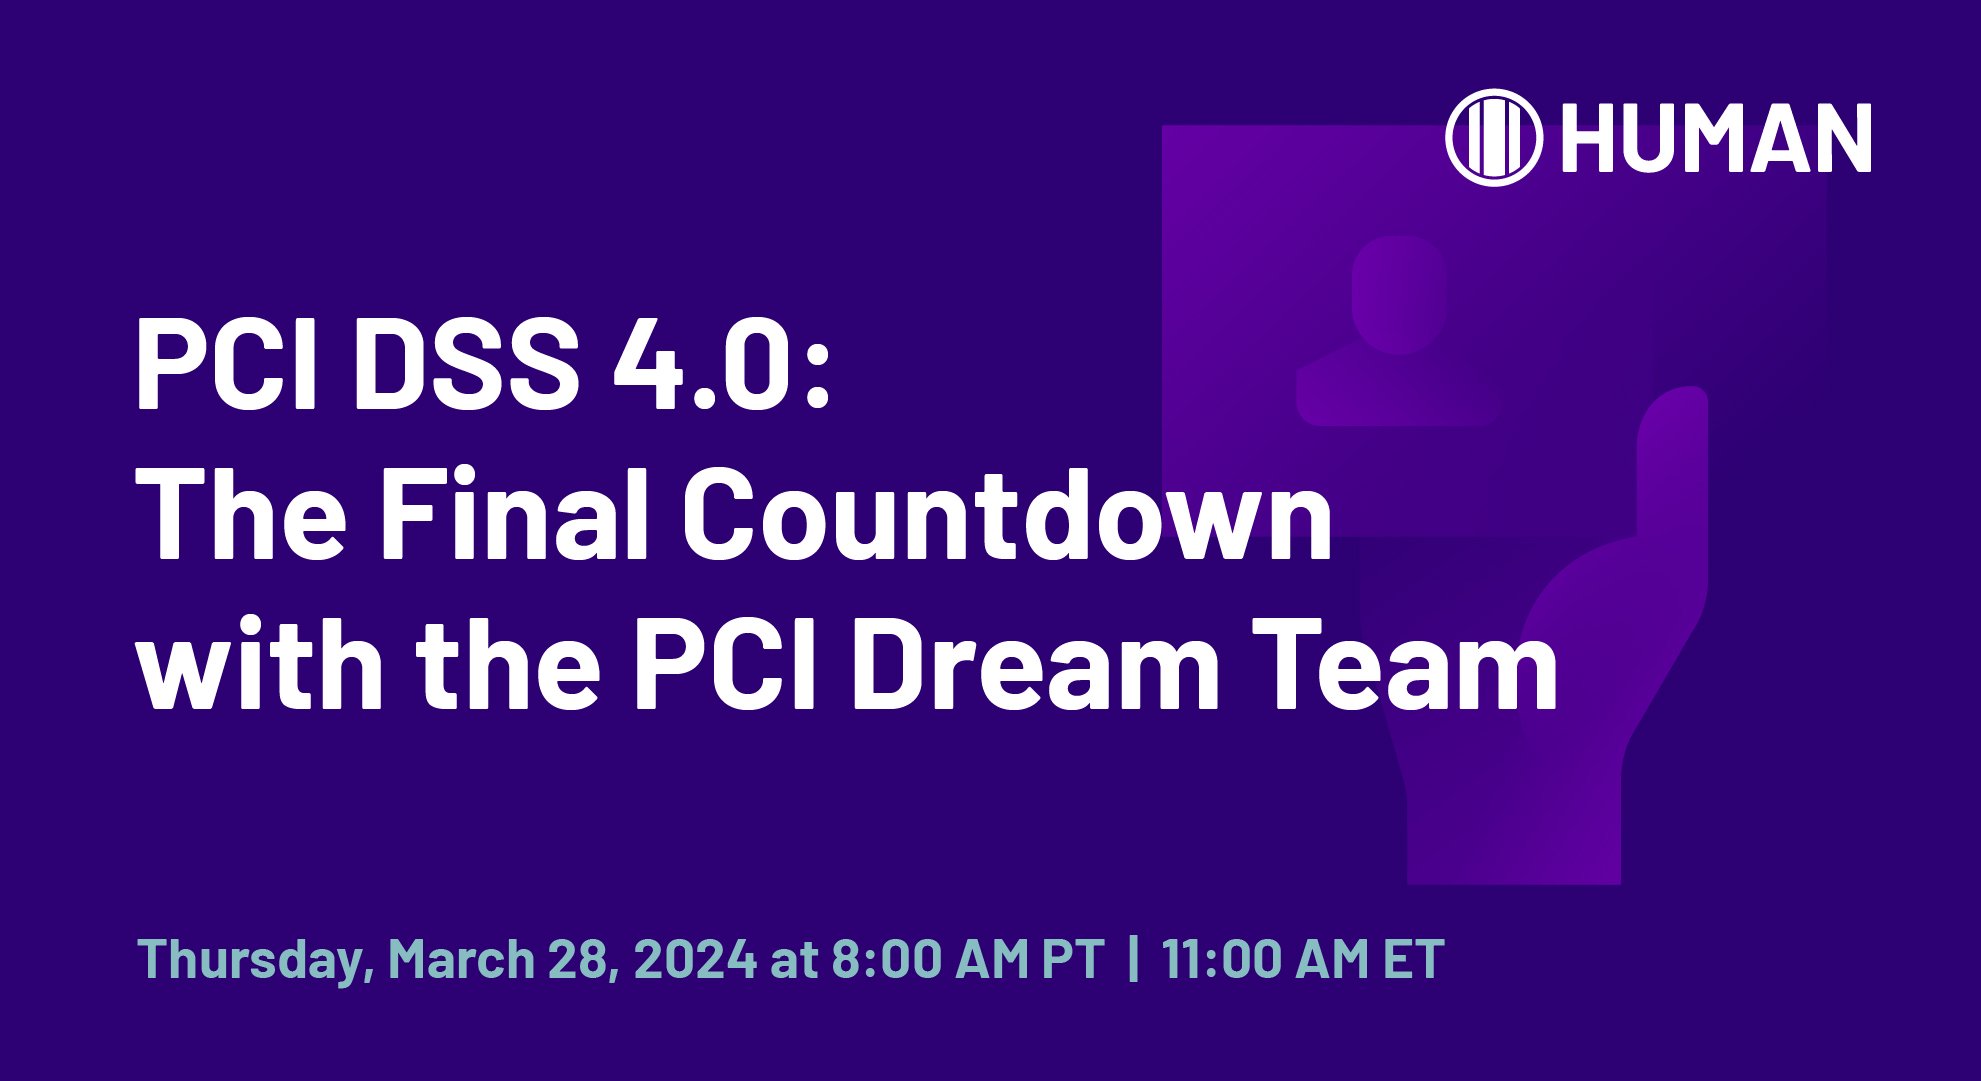 HUMAN_LIL_PCI DSS Countdown